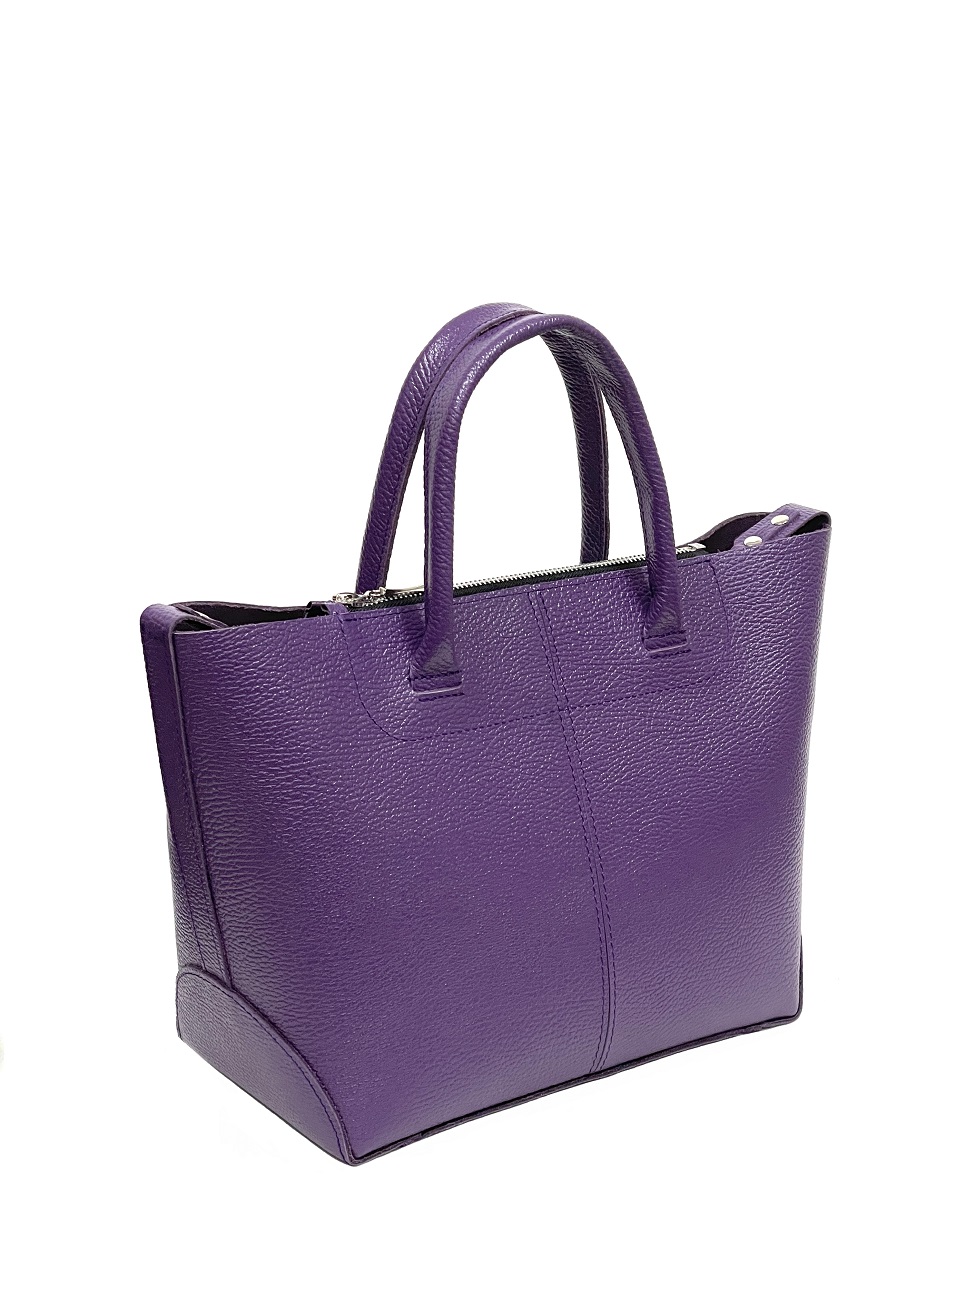 Женская кожаная сумка саквояж-трансформер фиолетовая A020 purple mini grain